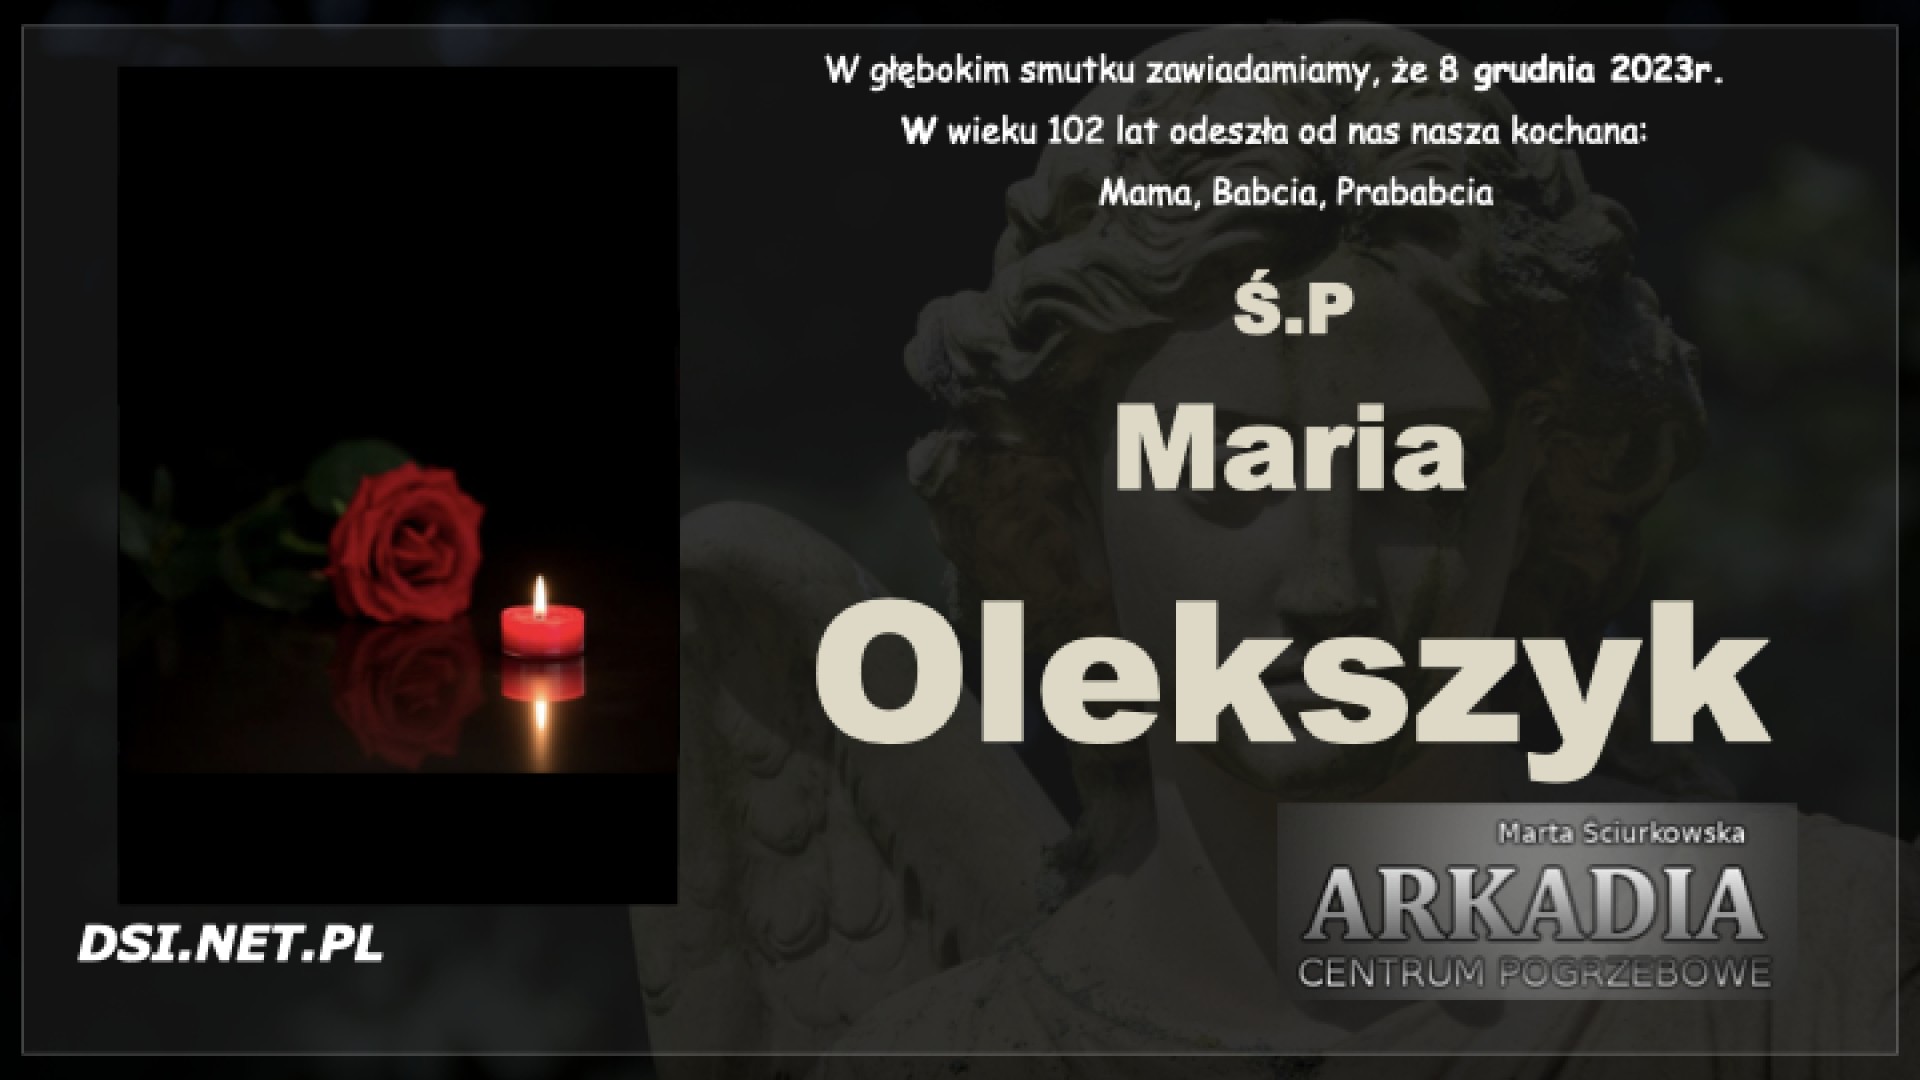 Ś.P Maria Olekszyk